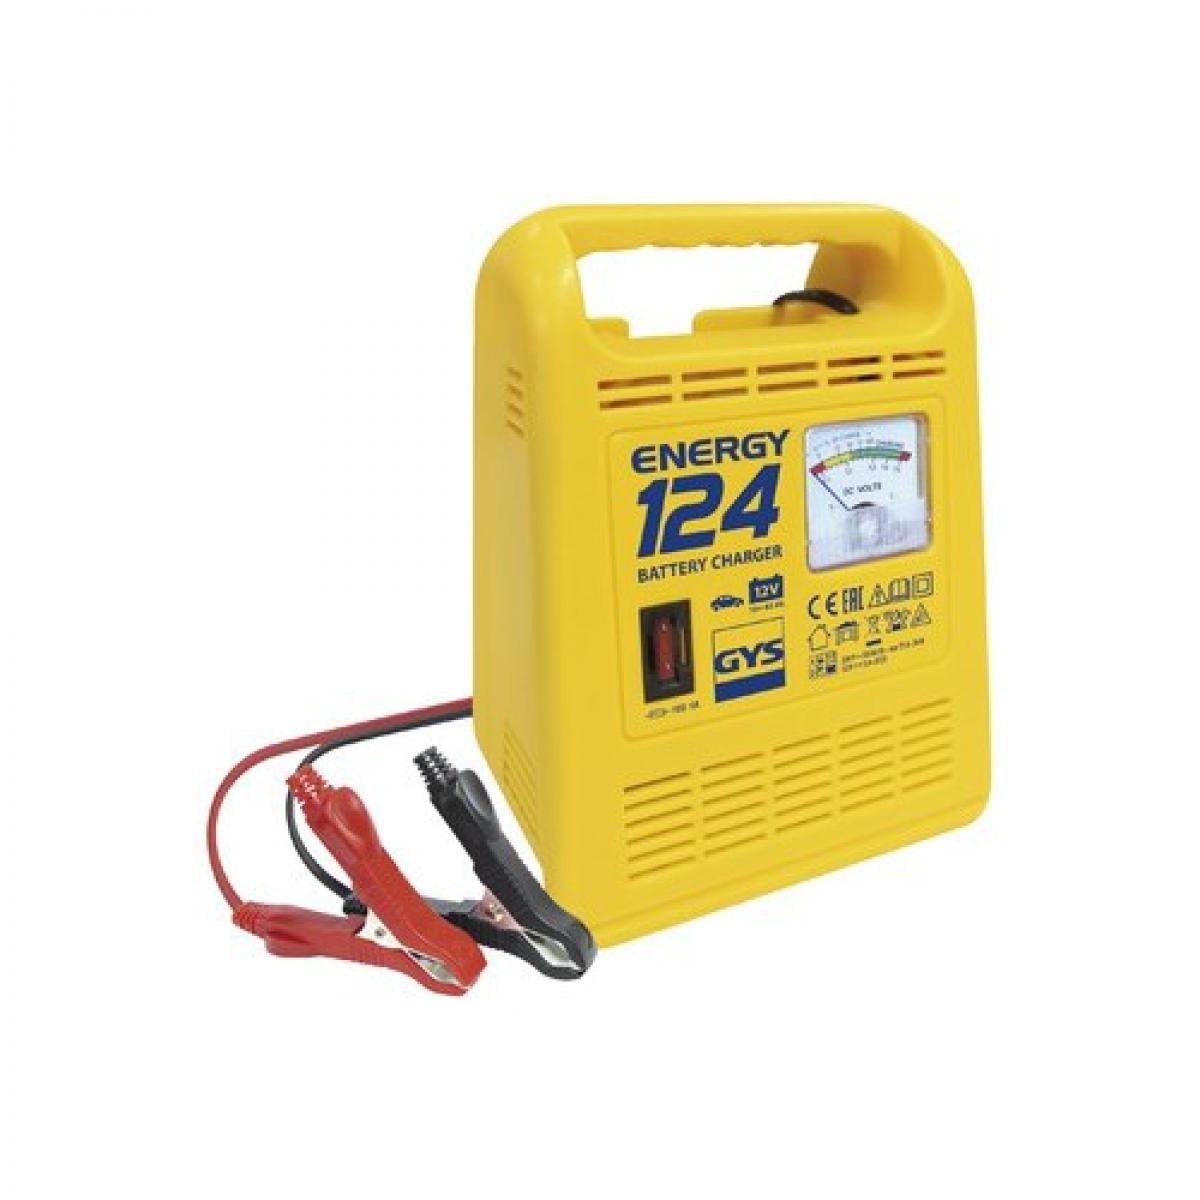 Gys - GYS Chargeur de batteries Energy 124 10-45 Ah 70 W - Consommables pour outillage motorisé